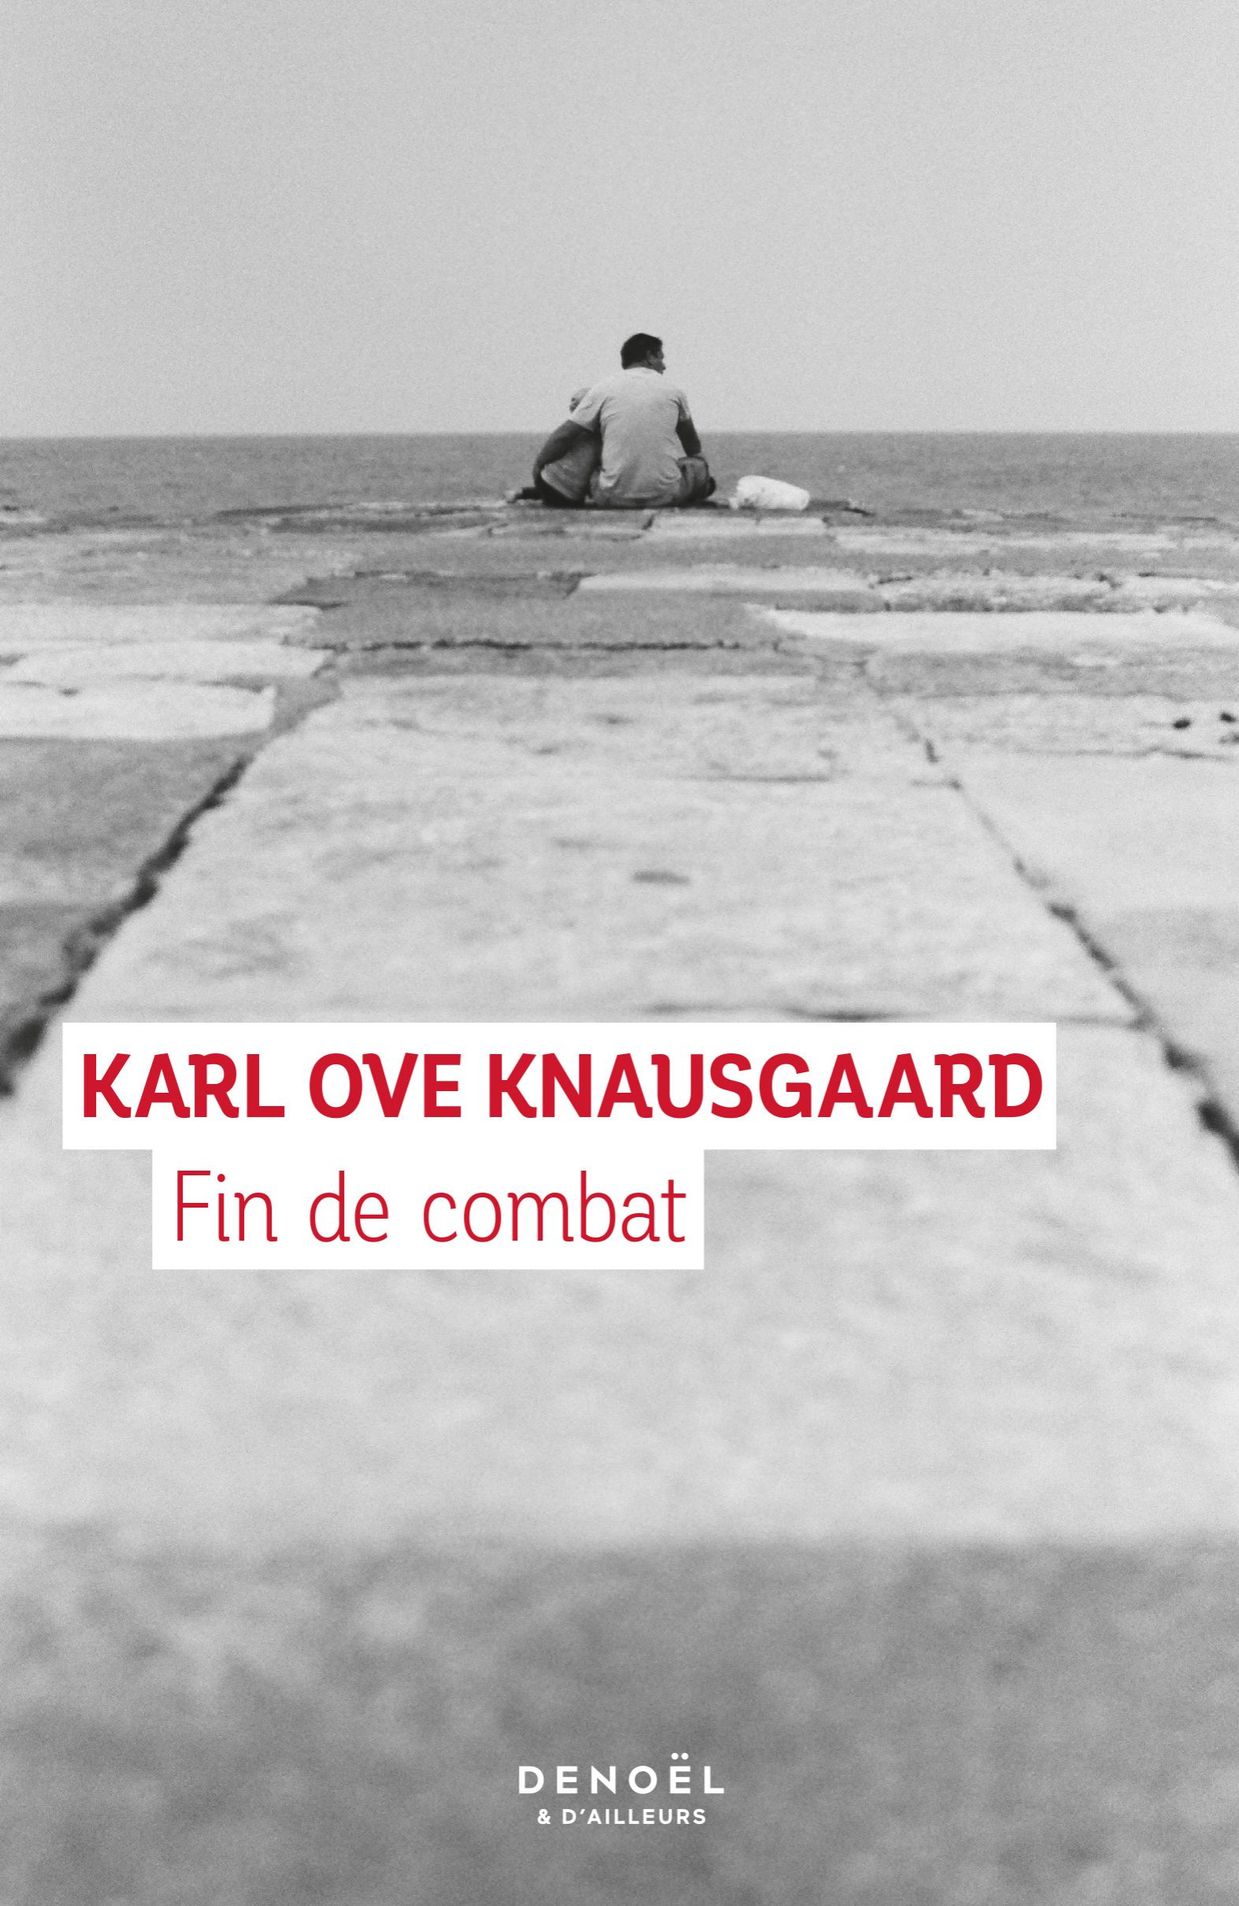 le prix de l’essai a été décerné au Norvégien Karl Ove Knausgaard, 52 ans, pour "Fin de combat" 